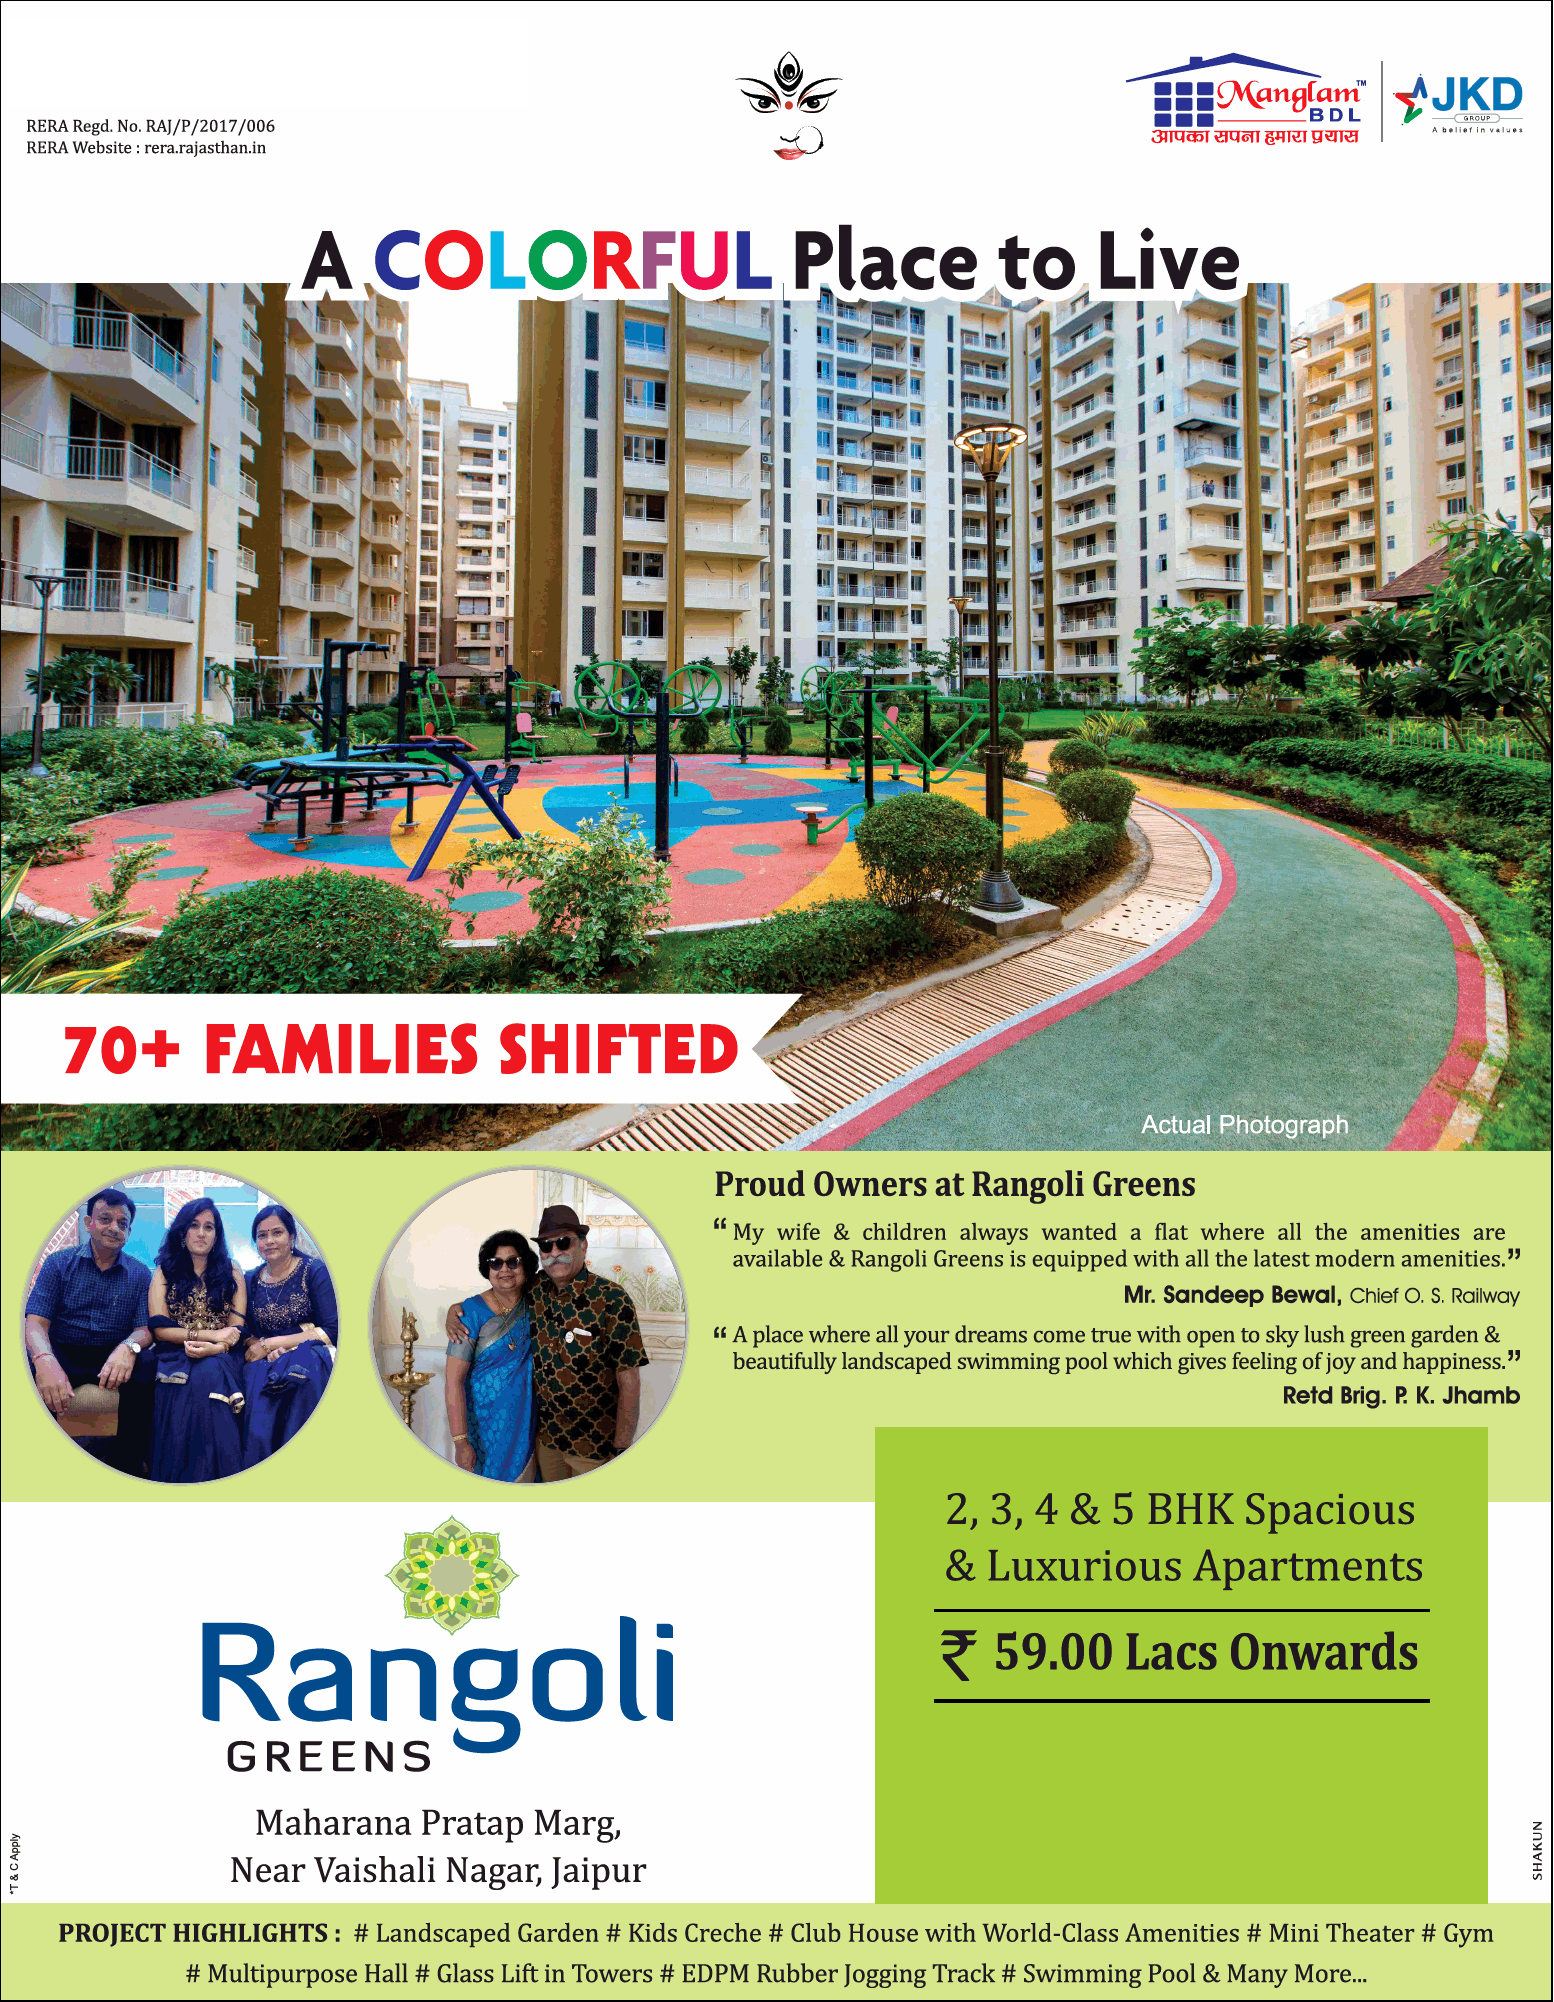 Book 2, 3, 4 & 5 bhk spacious apartments at Mangalam Rangoli Greens in Jaipur